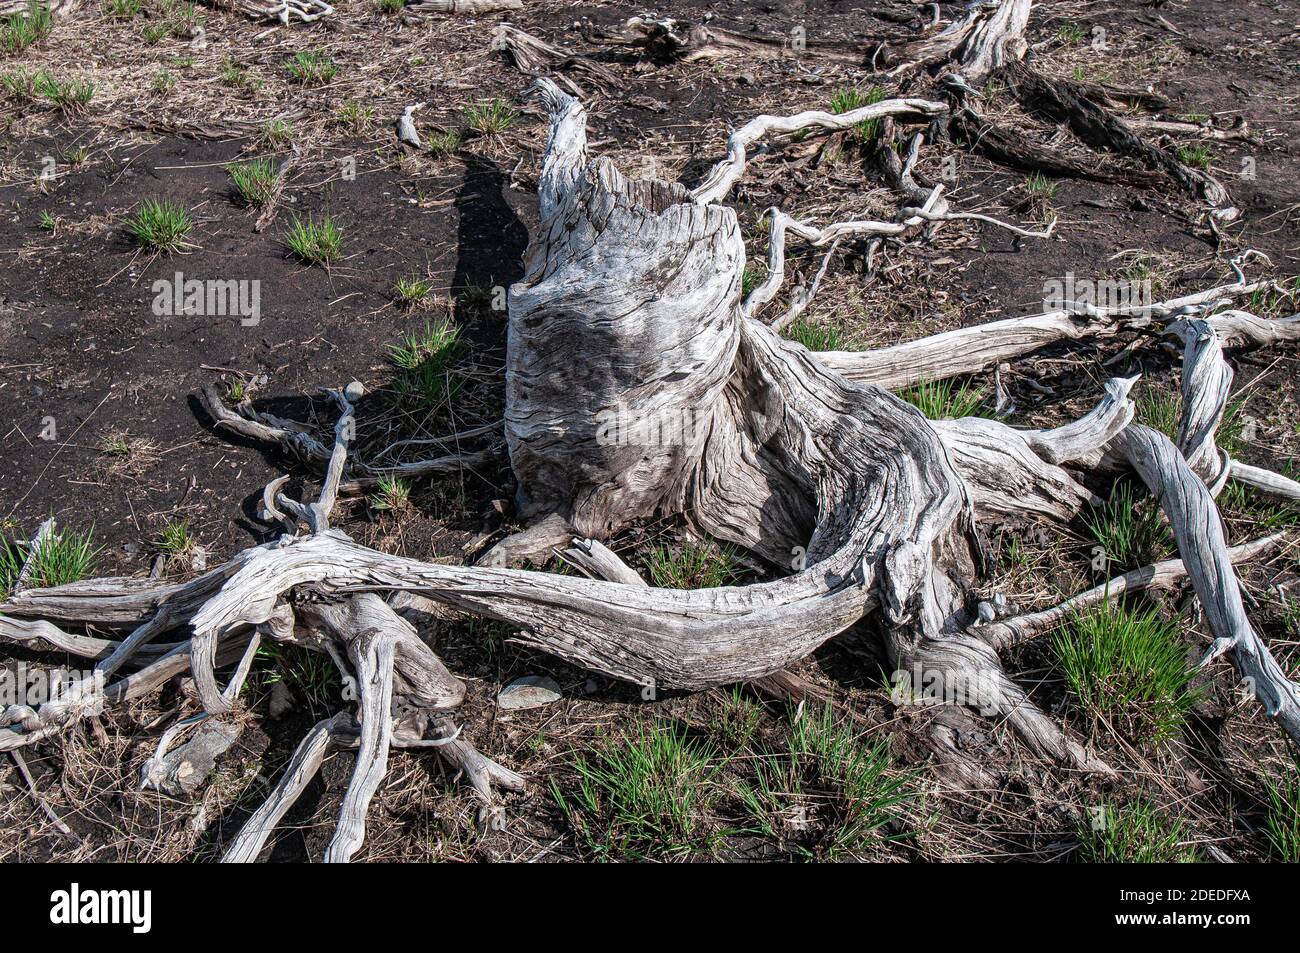 Die Wurzeln des Baumes auf dem alten Flutflugzeug, wo die excsive Wasserabholzung alle lebenden Bäume getötet hat. Stockfoto